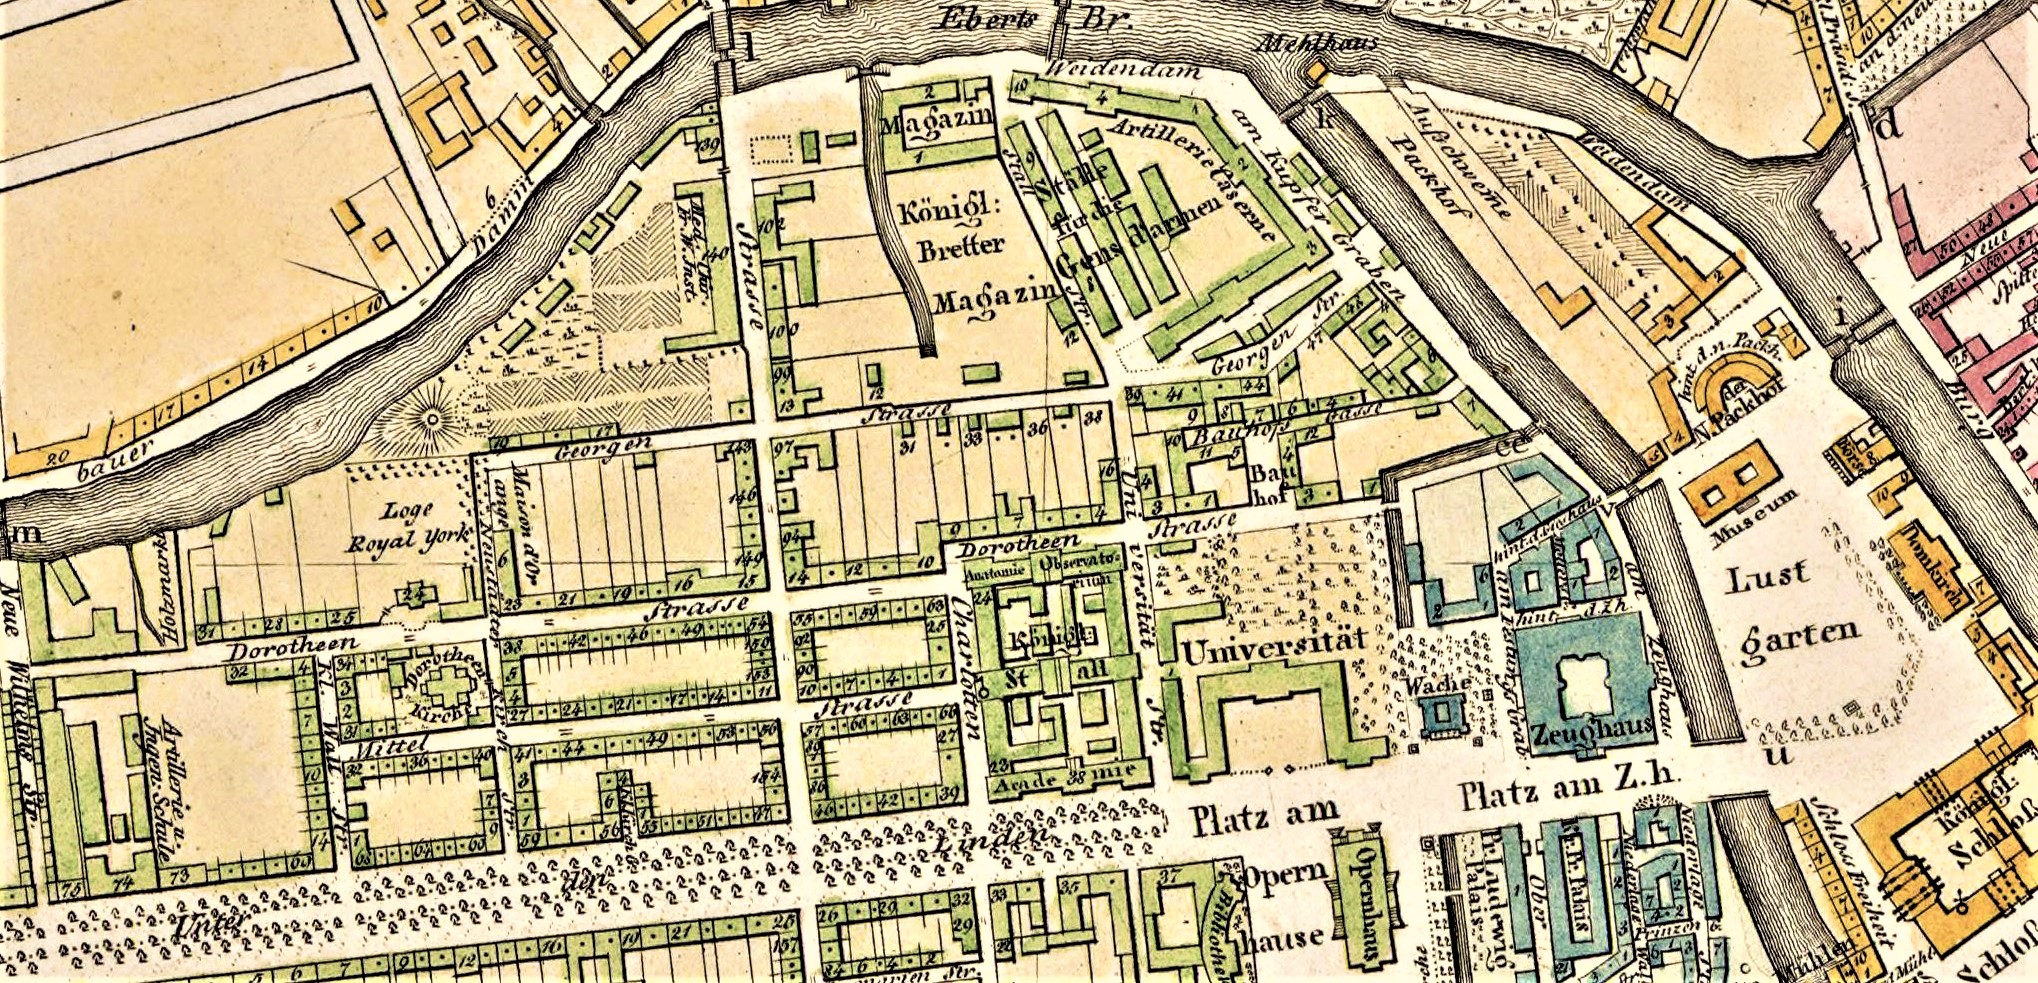 Stadtplan der Berliner Dorotheenstadt um 1825 (Gutzkows Wohngegend zur Knabenzeit)